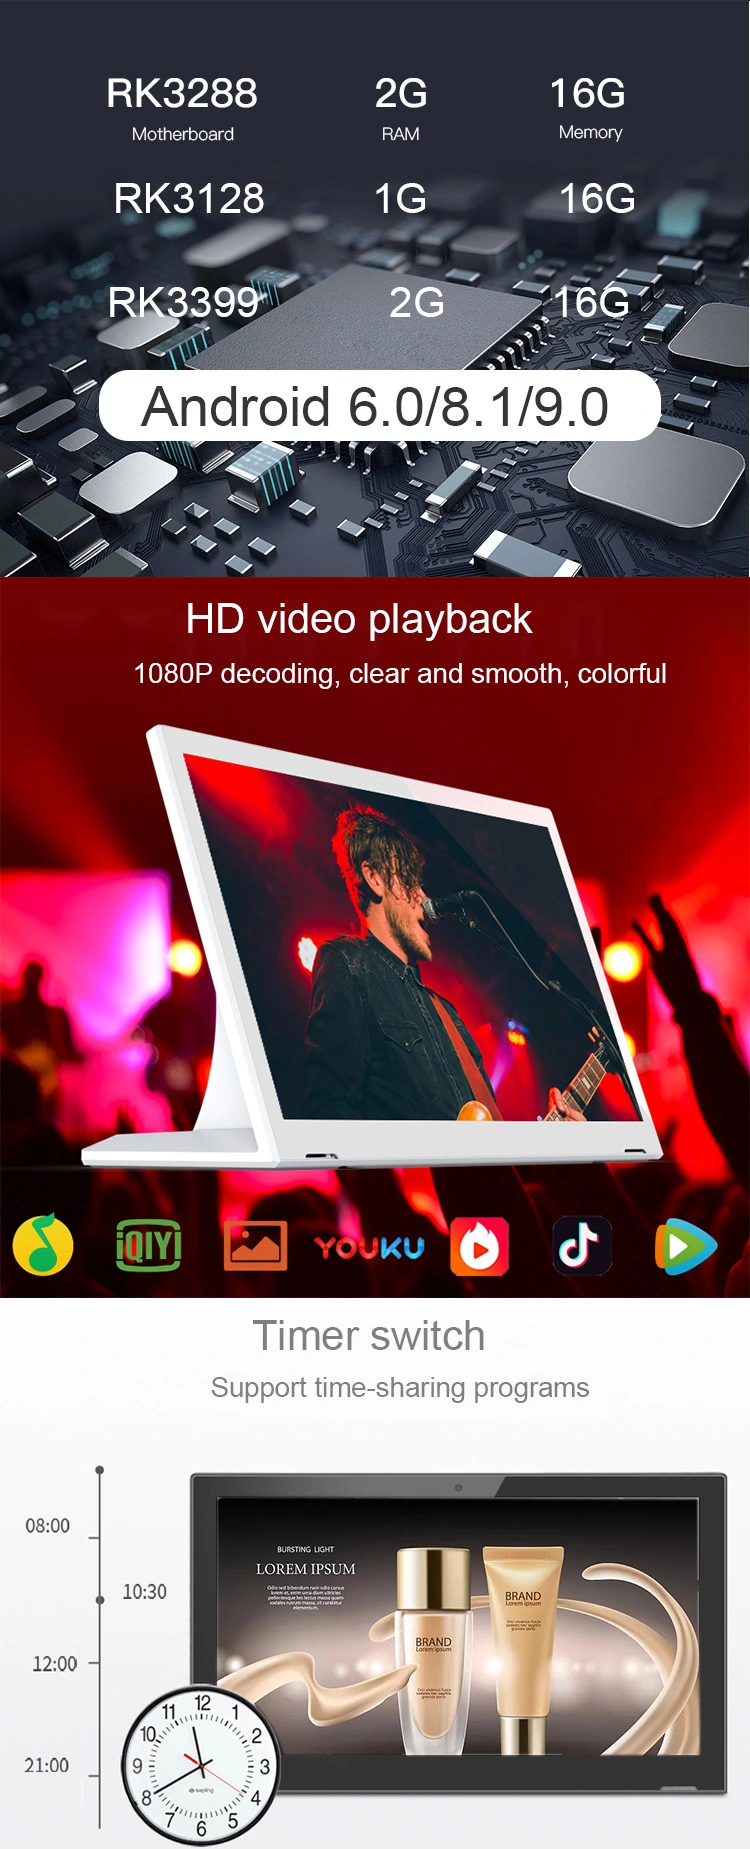 10 Inch Android Tablet Android Tablet PC Tablet Android